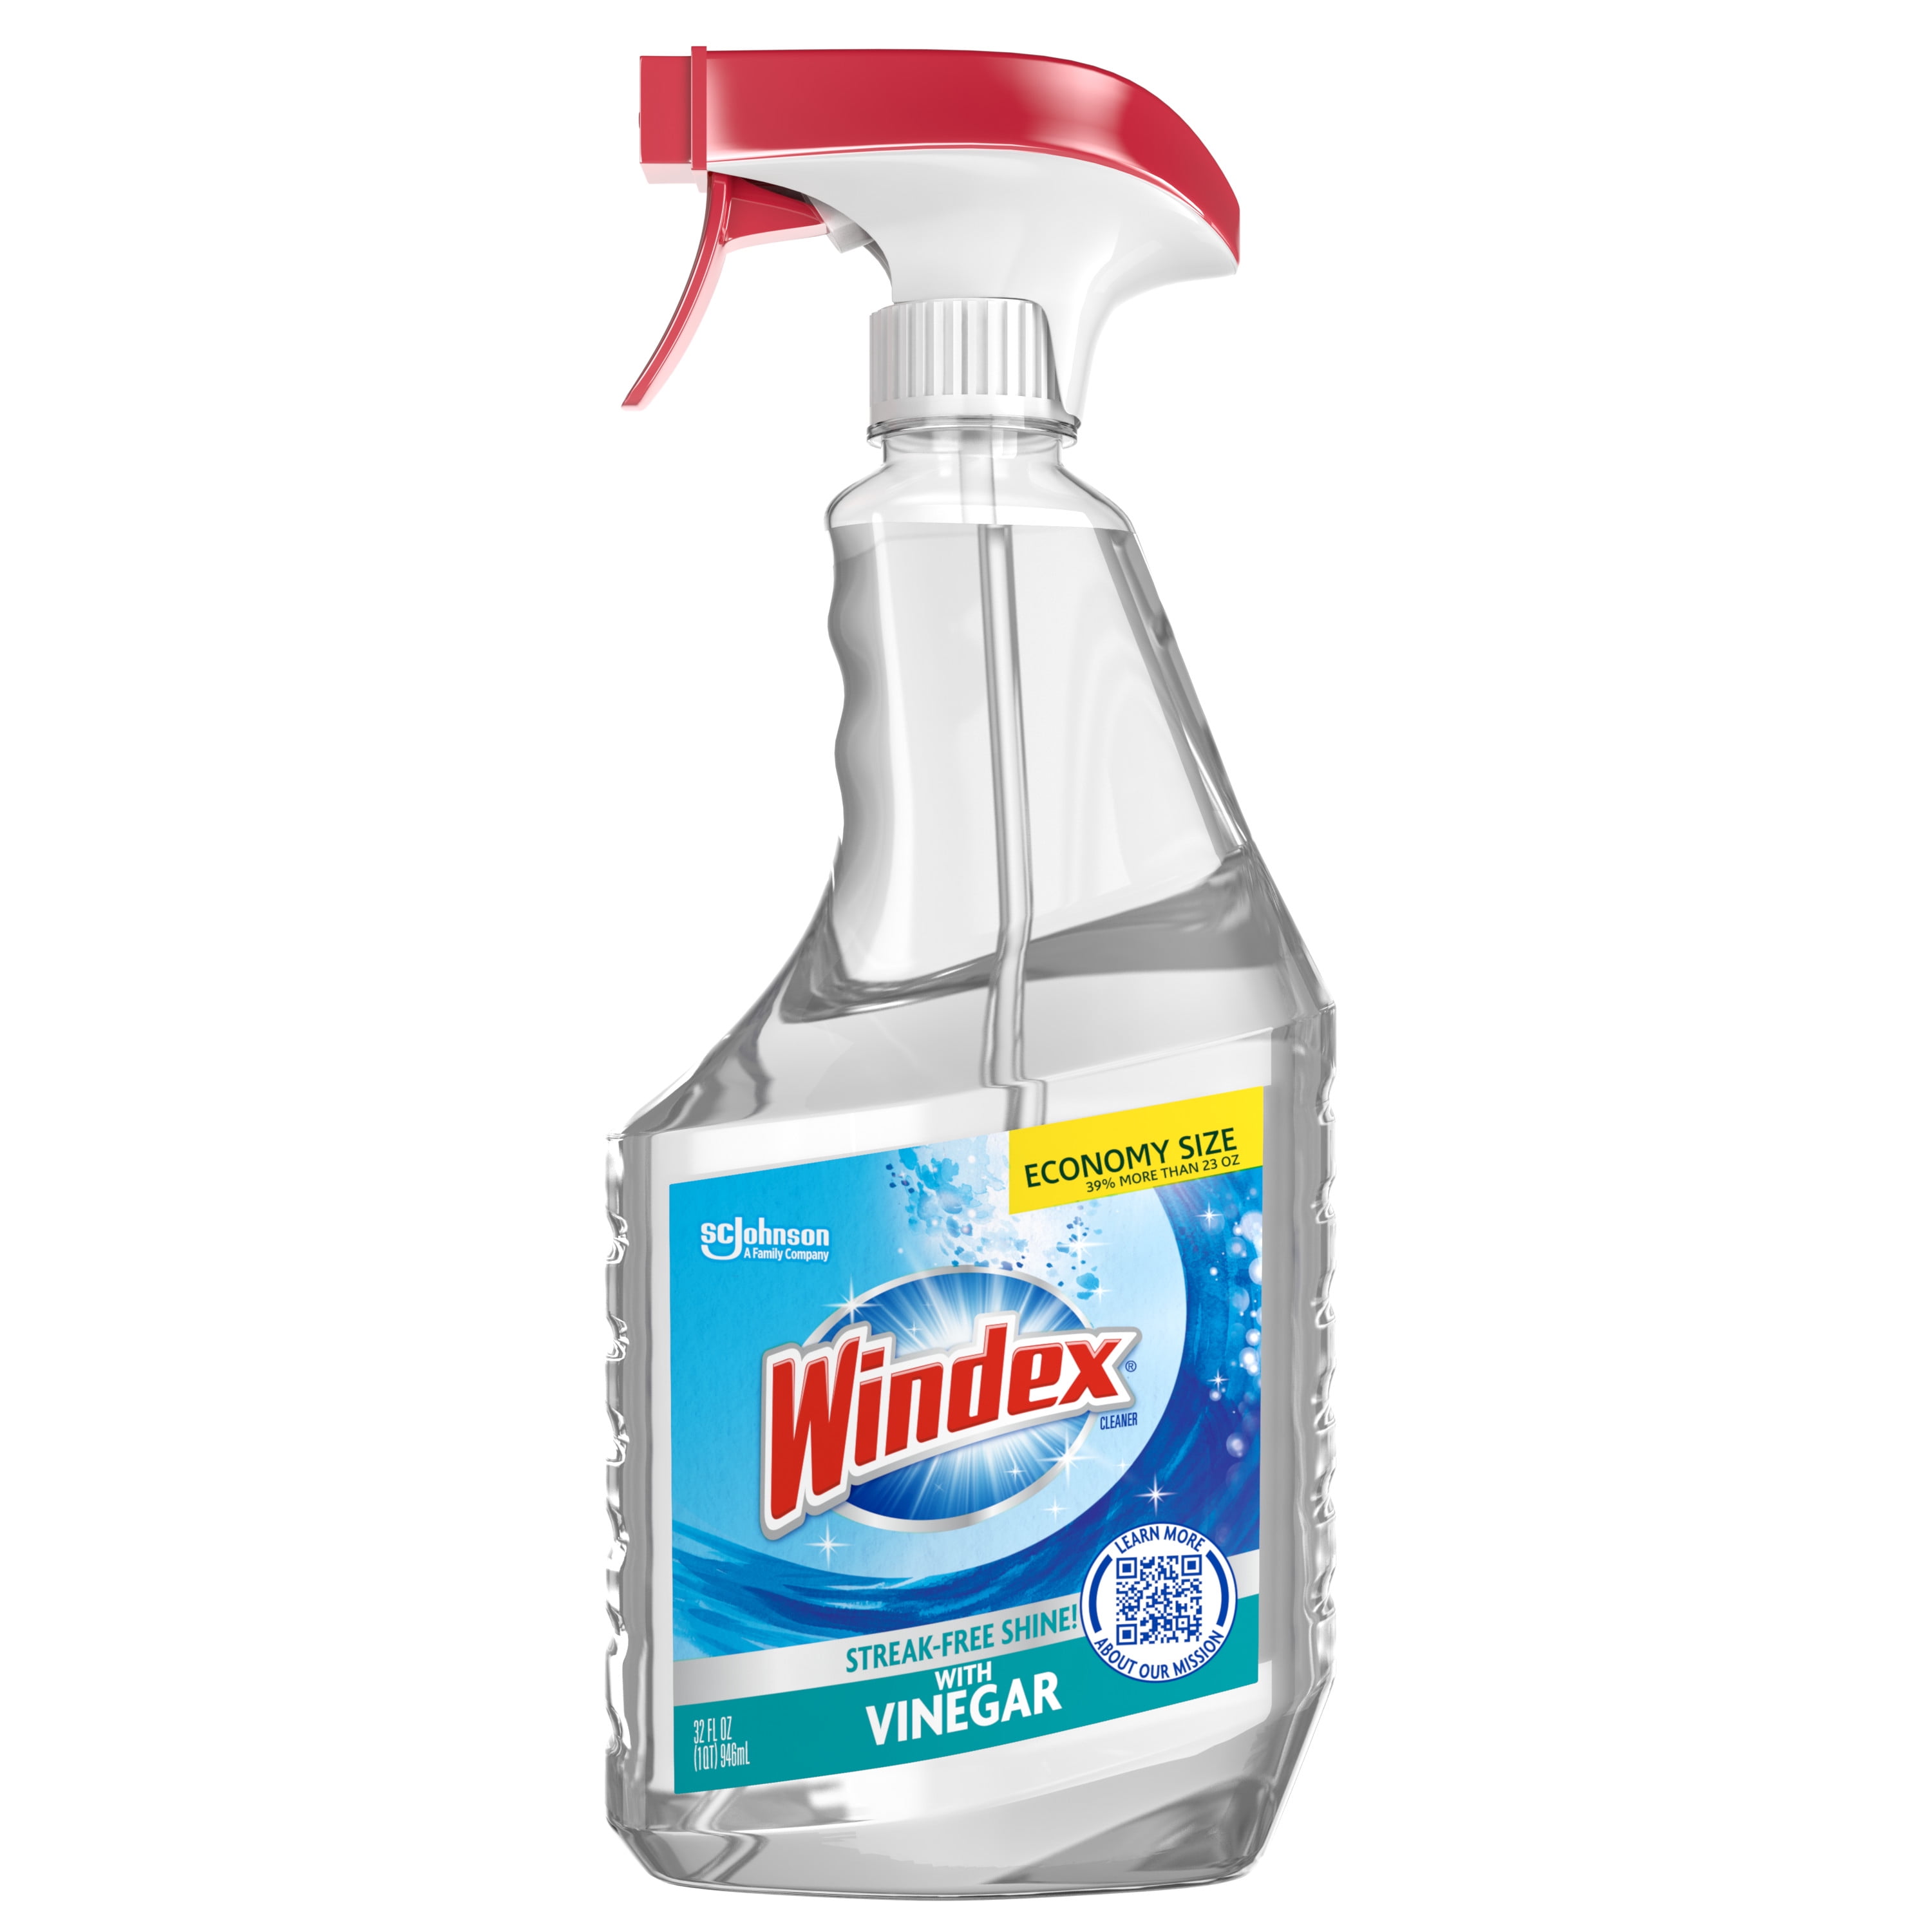 Windex with Vinegar Glass Cleaner, Spray Bottle, 32 fl oz